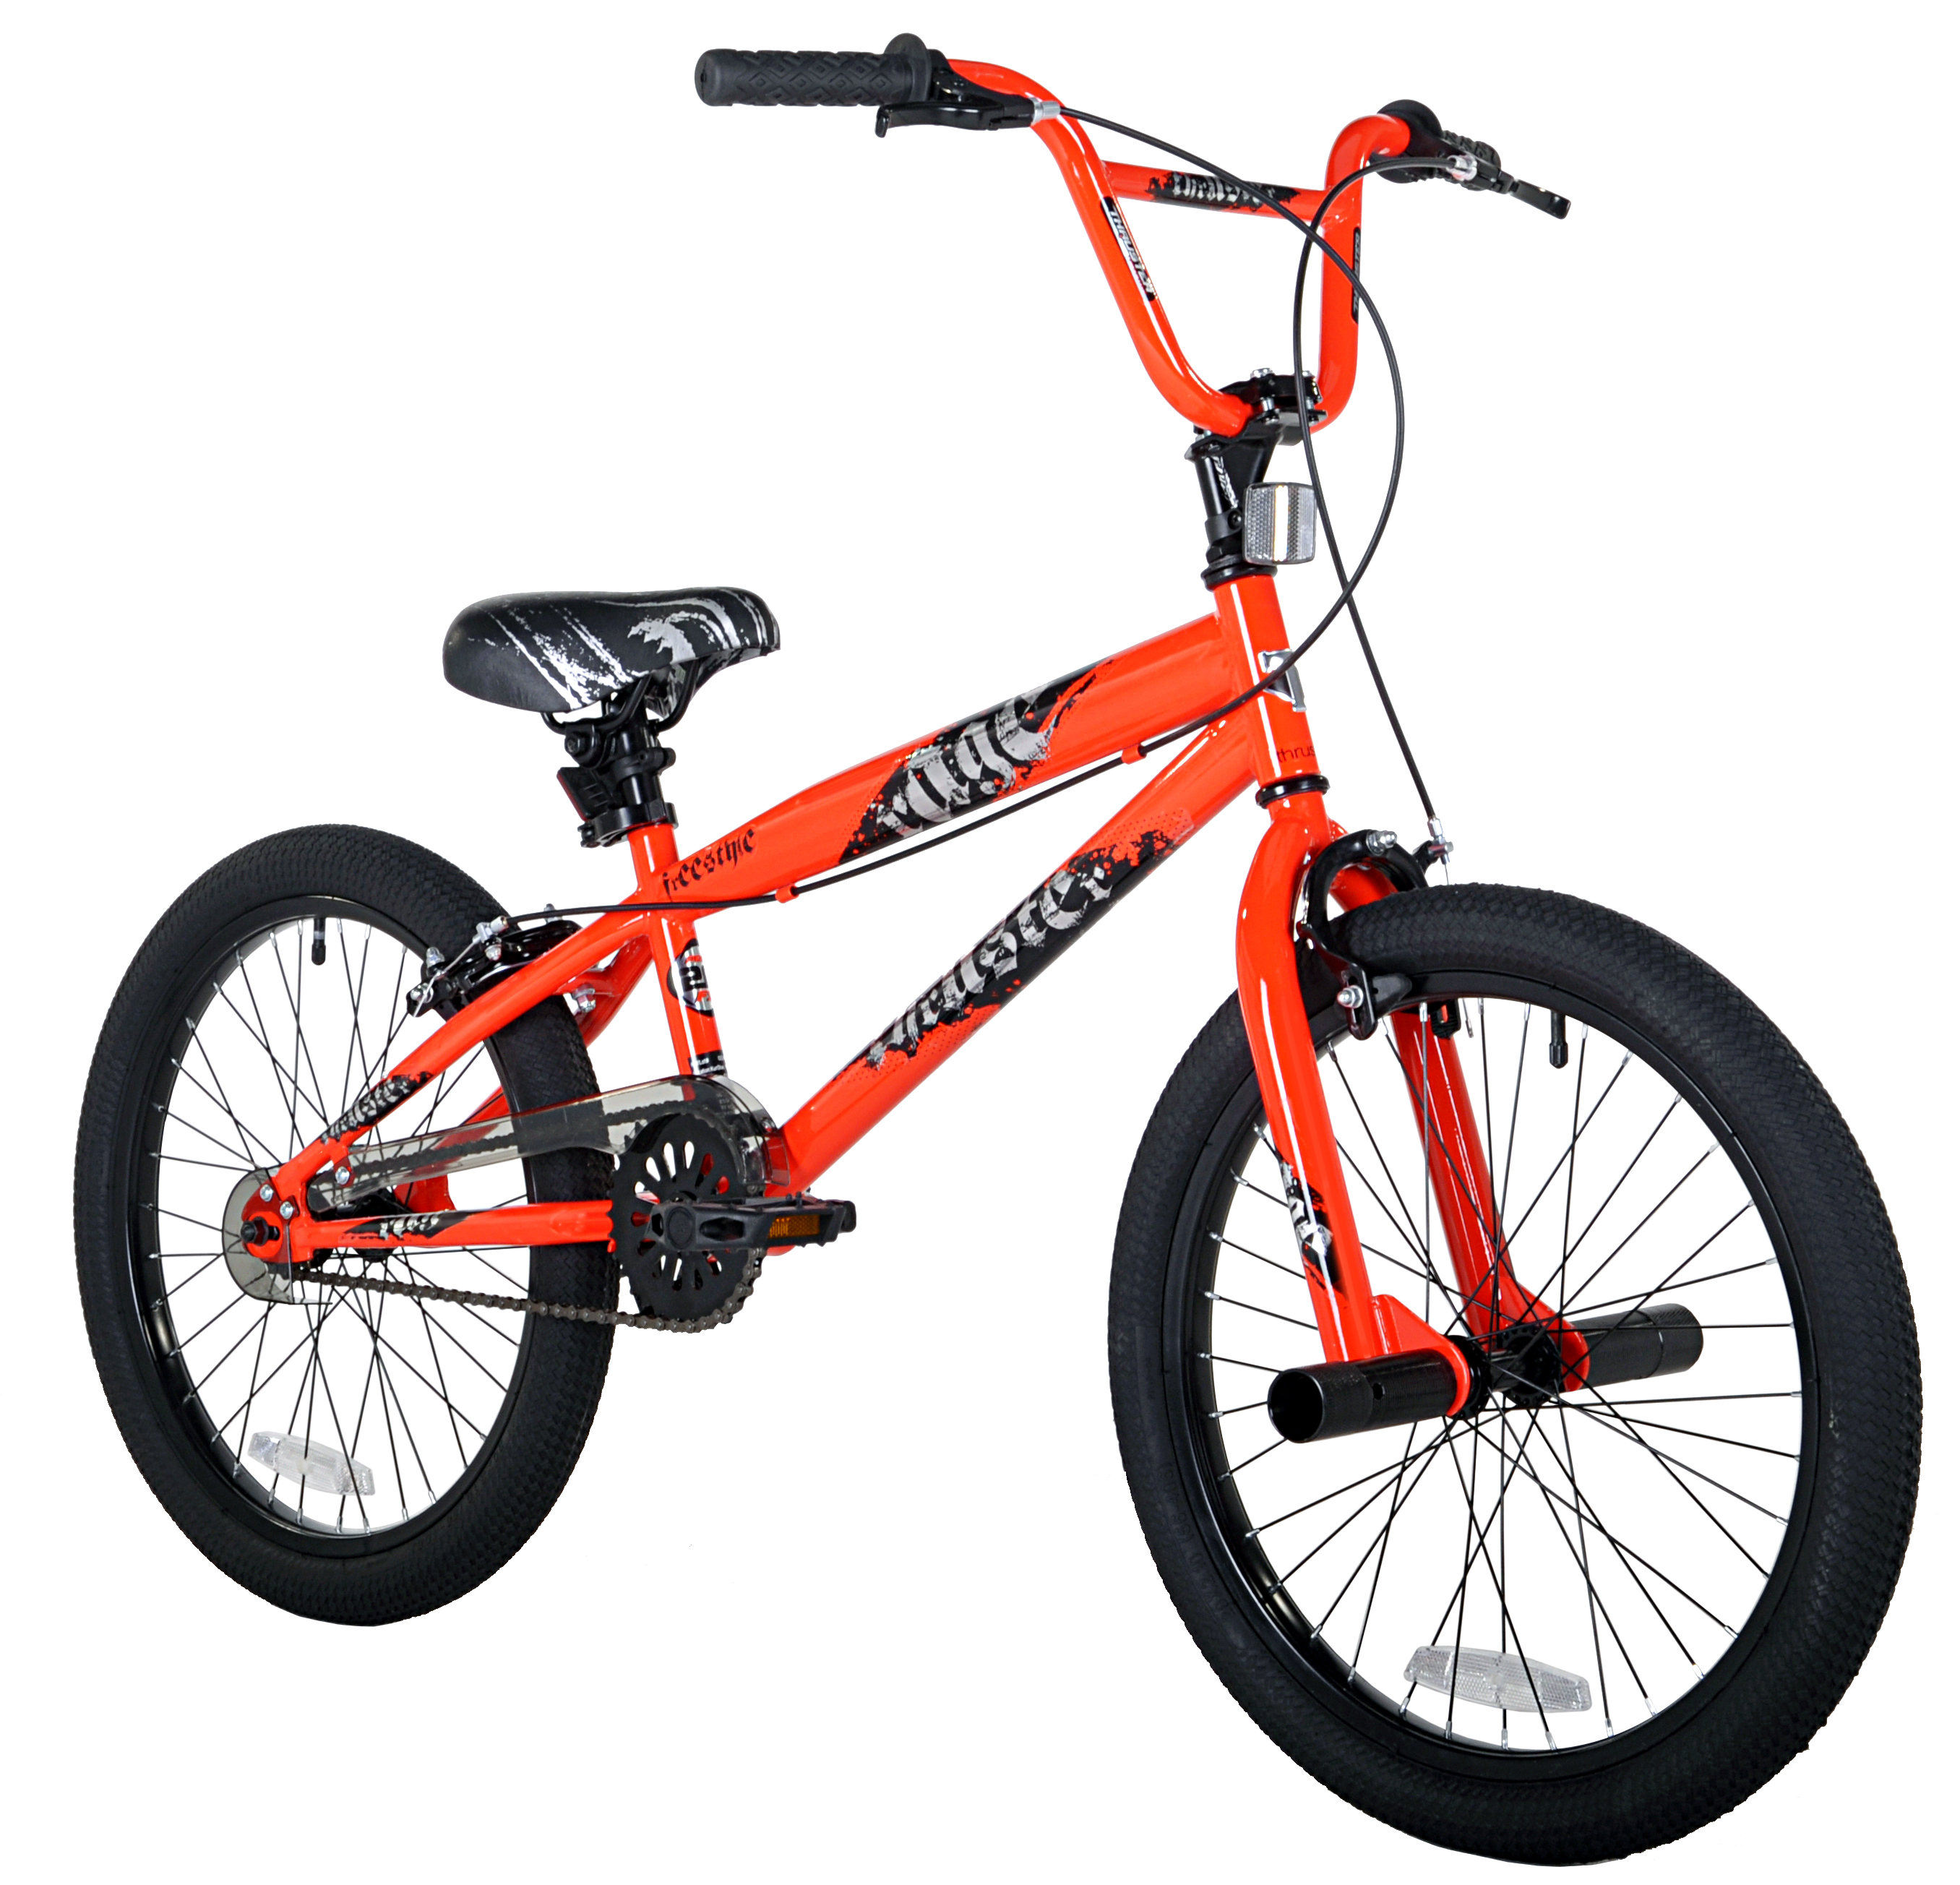 Kent 20" Thruster Rage BMX Boy's Bike, Orange - image 1 of 7